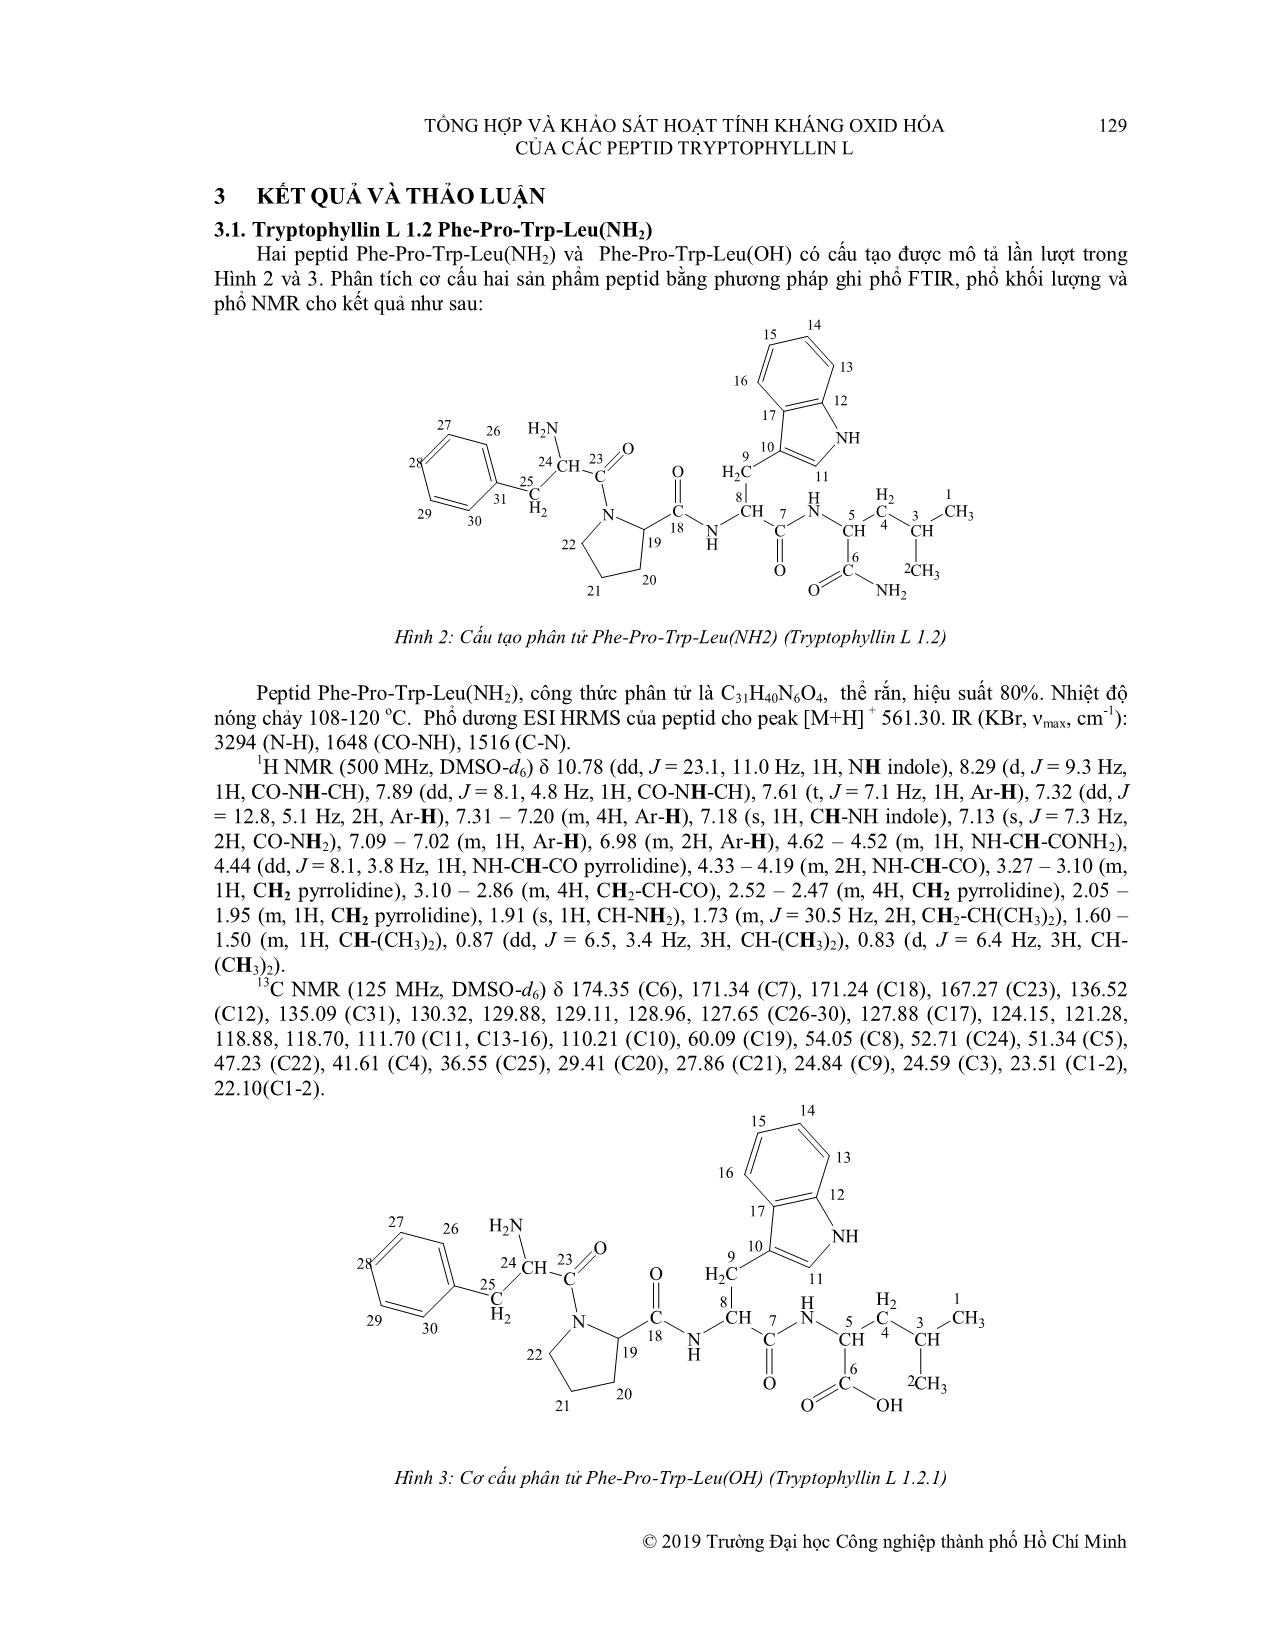 Tổng hợp và khảo sát hoạt tính kháng oxid hóa của các peptid Tryptophyllin L trang 6